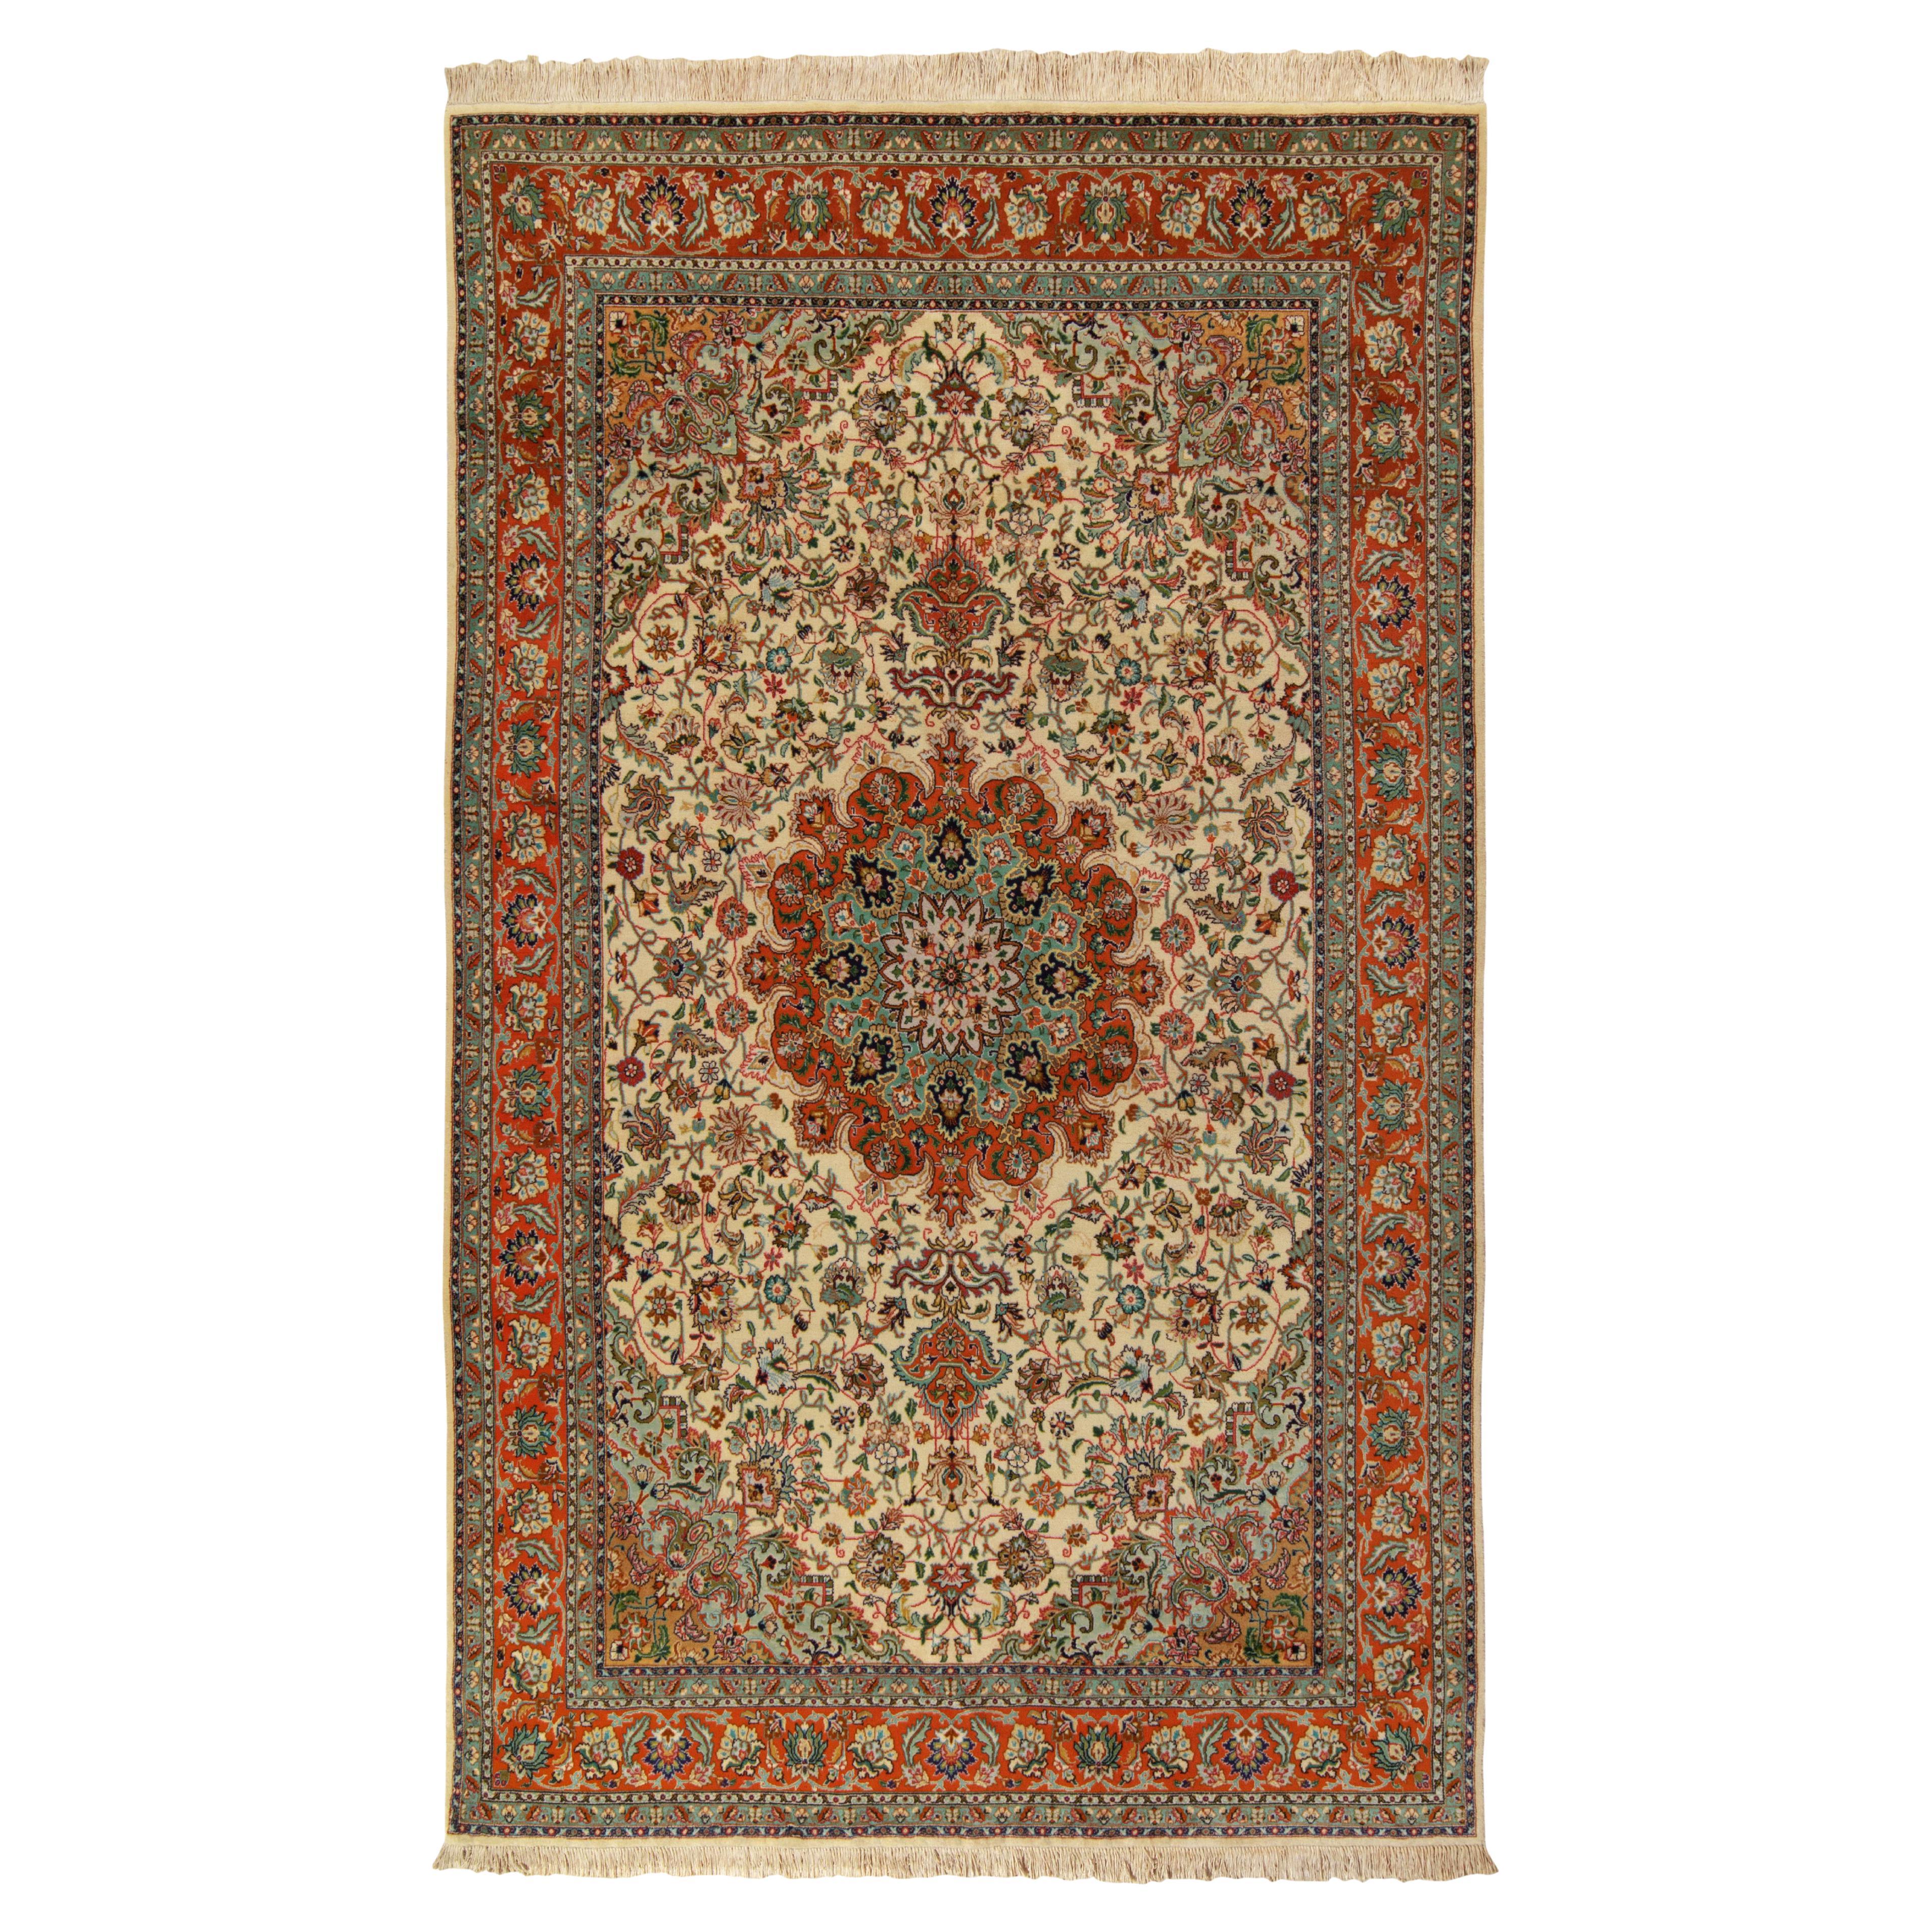 Tabriz-Teppich in Beige, Blau und Grün mit Medaillonmuster von Teppich & Kelim